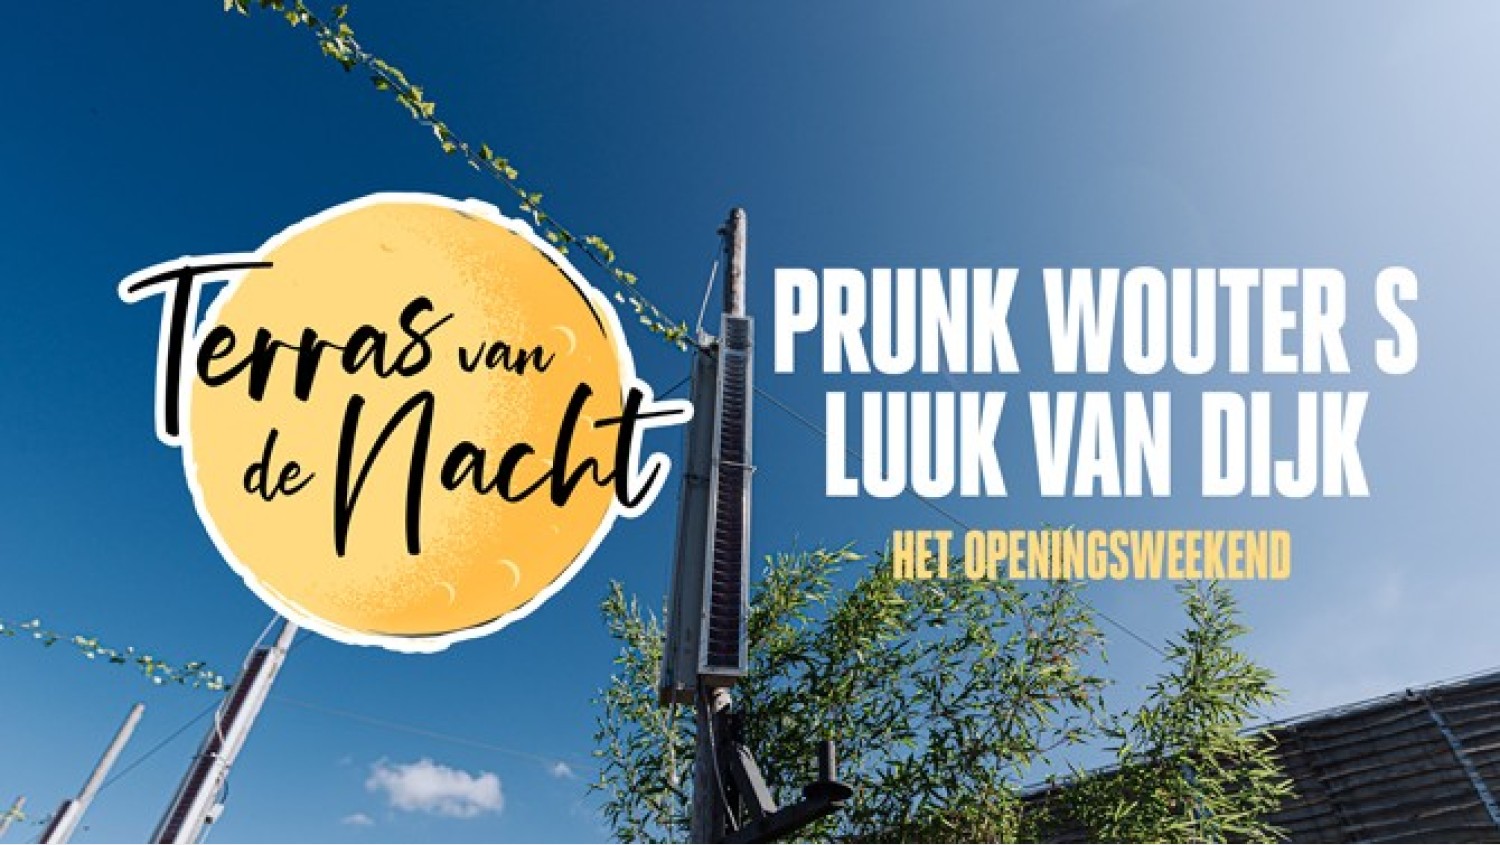 Party nieuws: Amsterdamse feestorganisaties openen terras